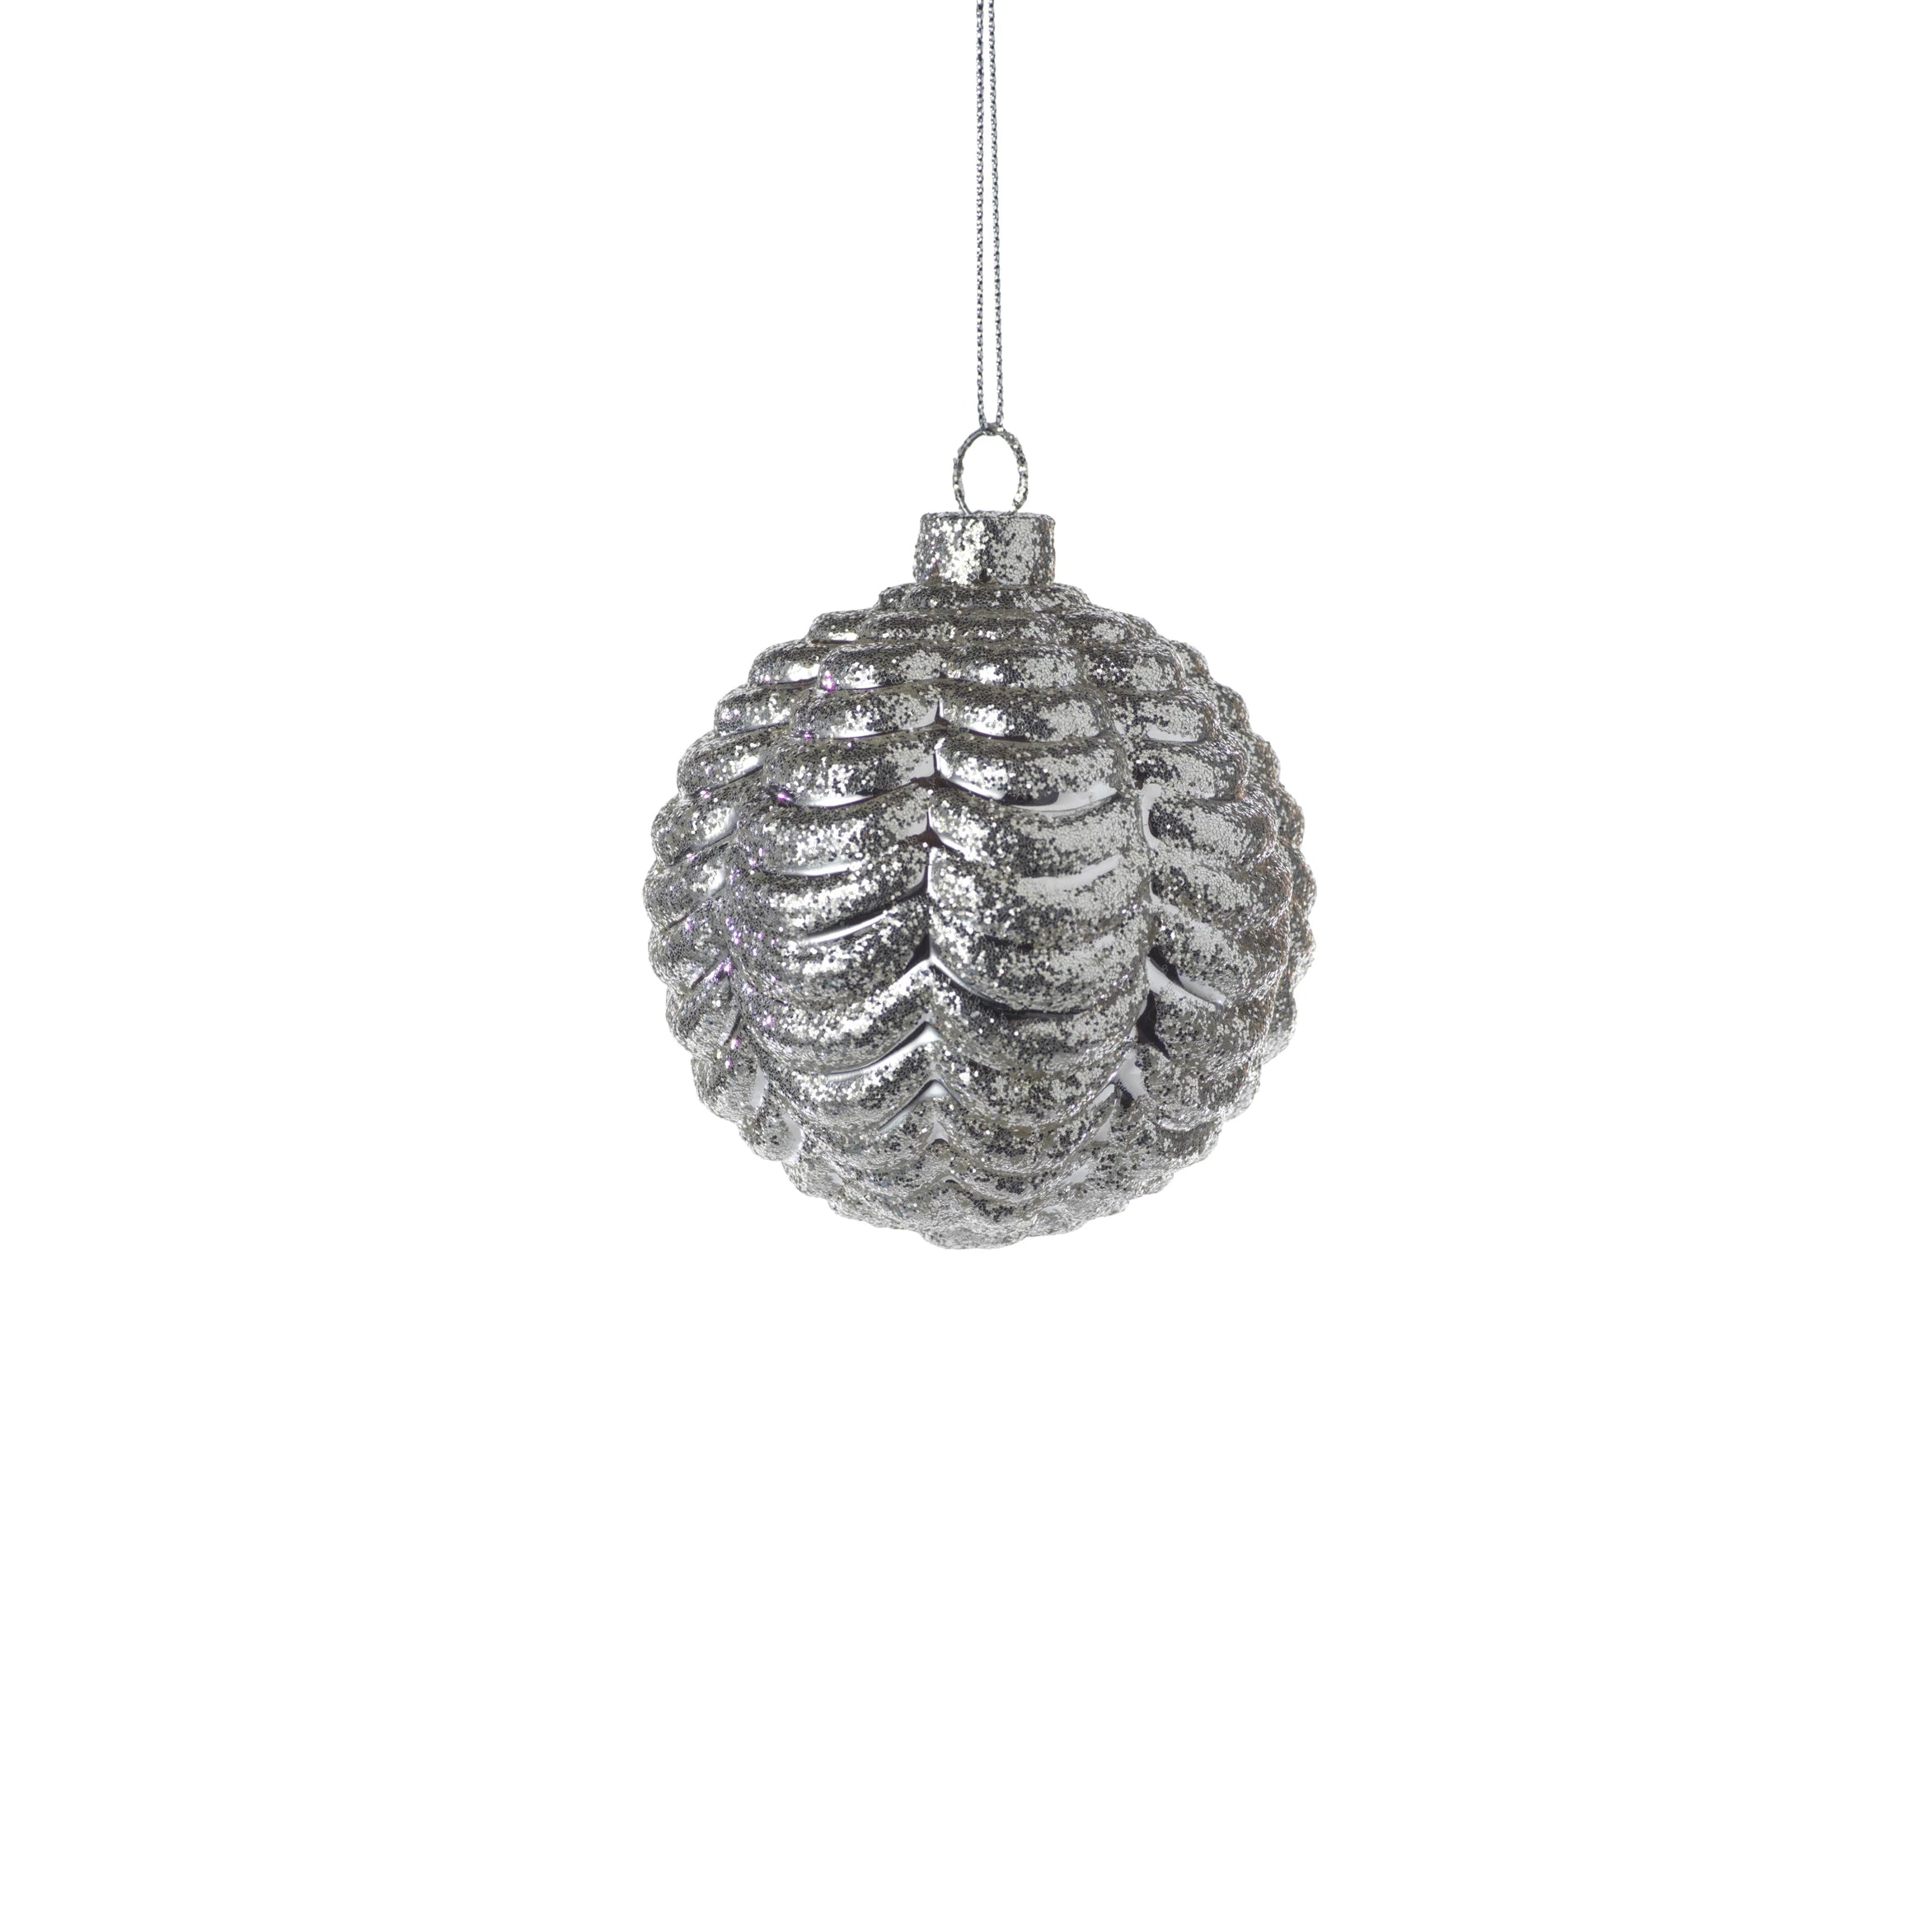 Silver Ripple Ball Ornament - CARLYLE AVENUE